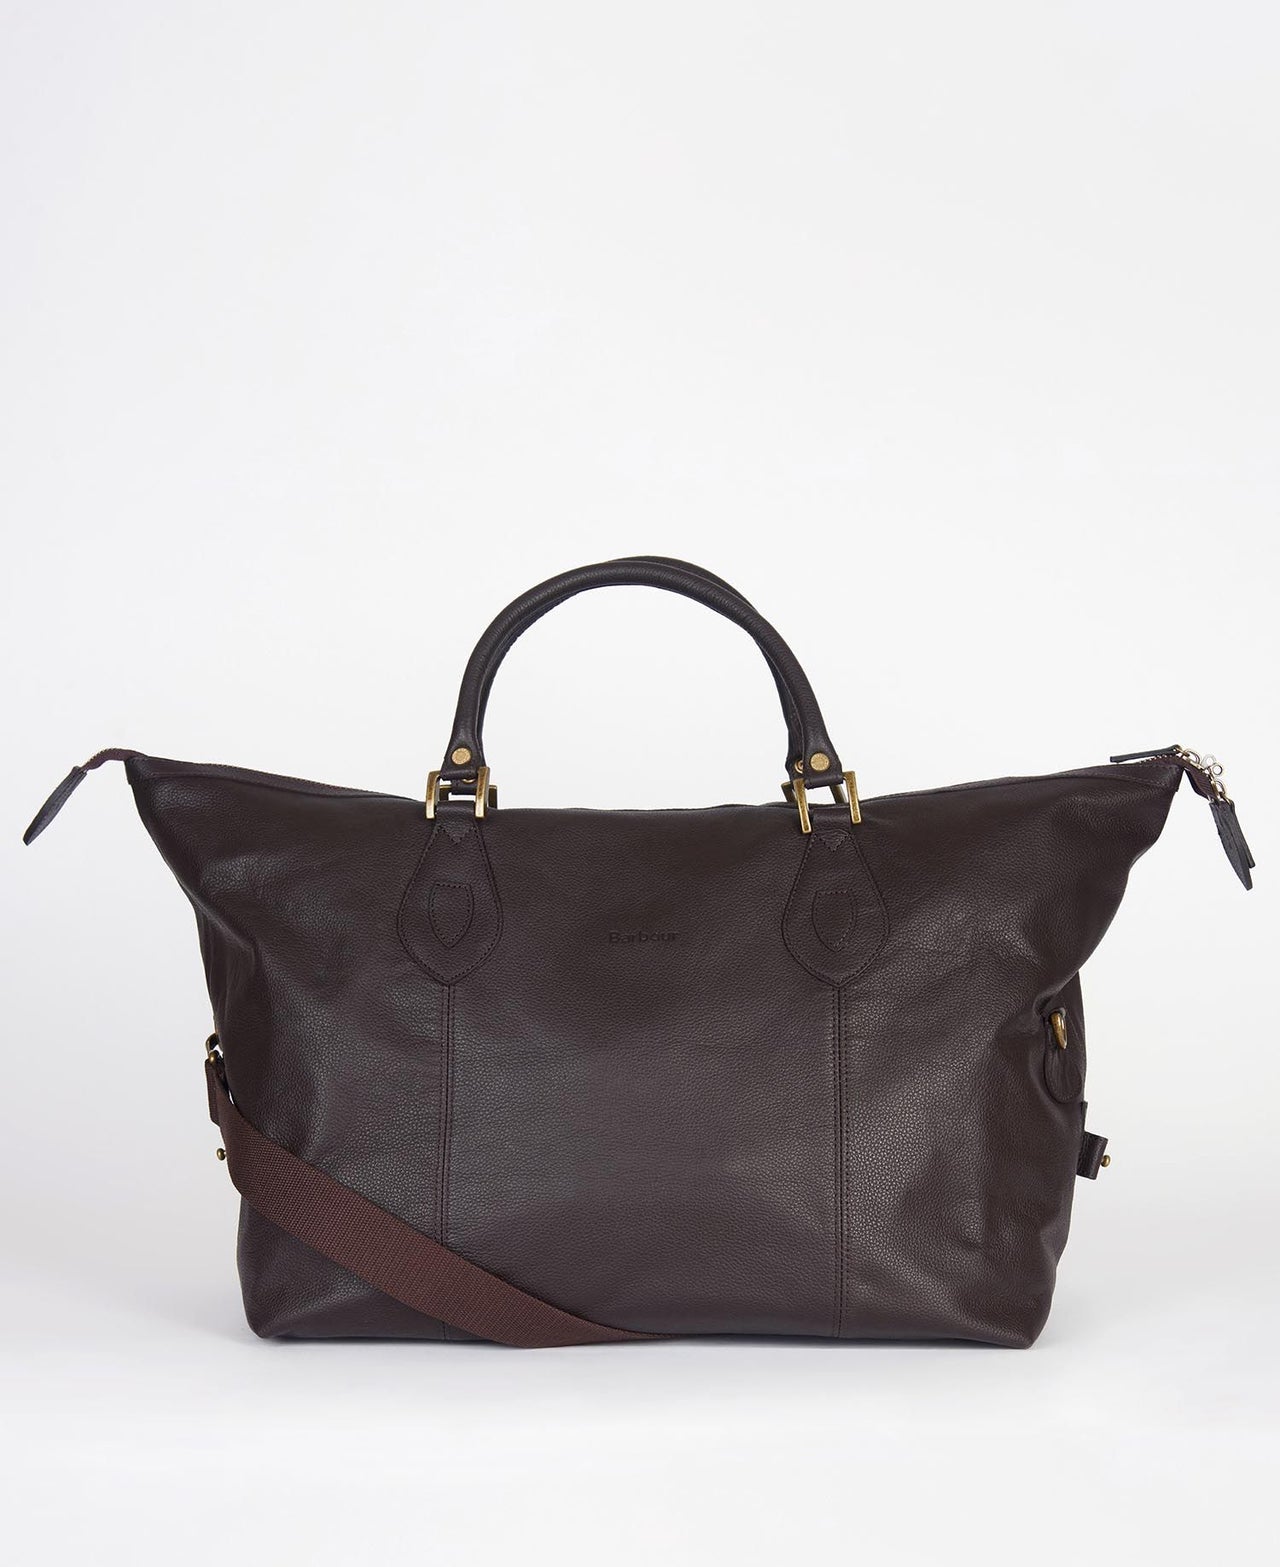 Barbour Medium Leather Travel Explorer Bag